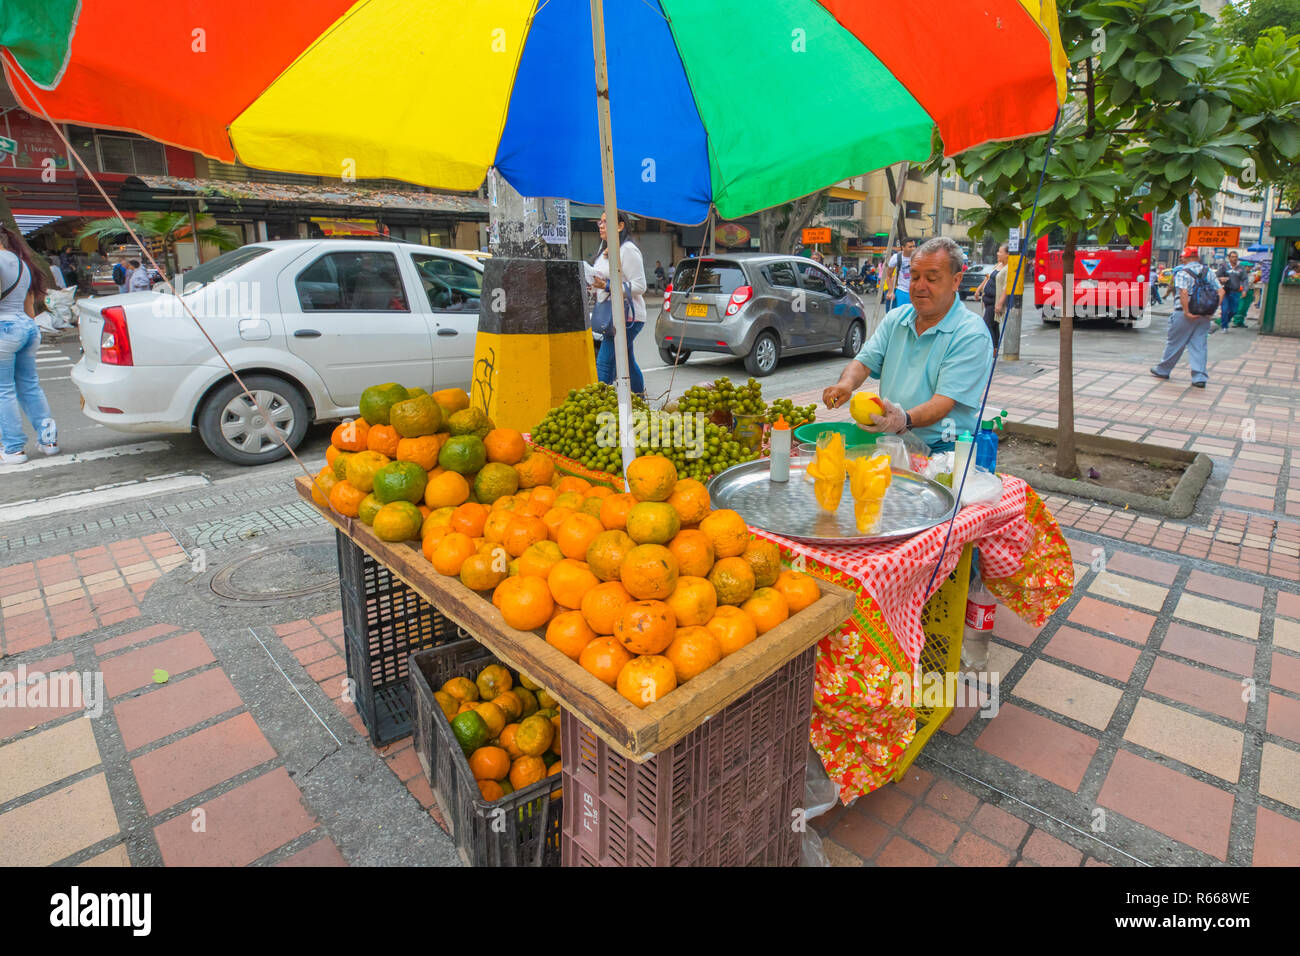 Medellin Janvier 2018 Le matin, un vieil homme vend des mandarines fraîches sur son échoppe dans une rue dans le centre de Medellin, car les gens aiment acheter Banque D'Images